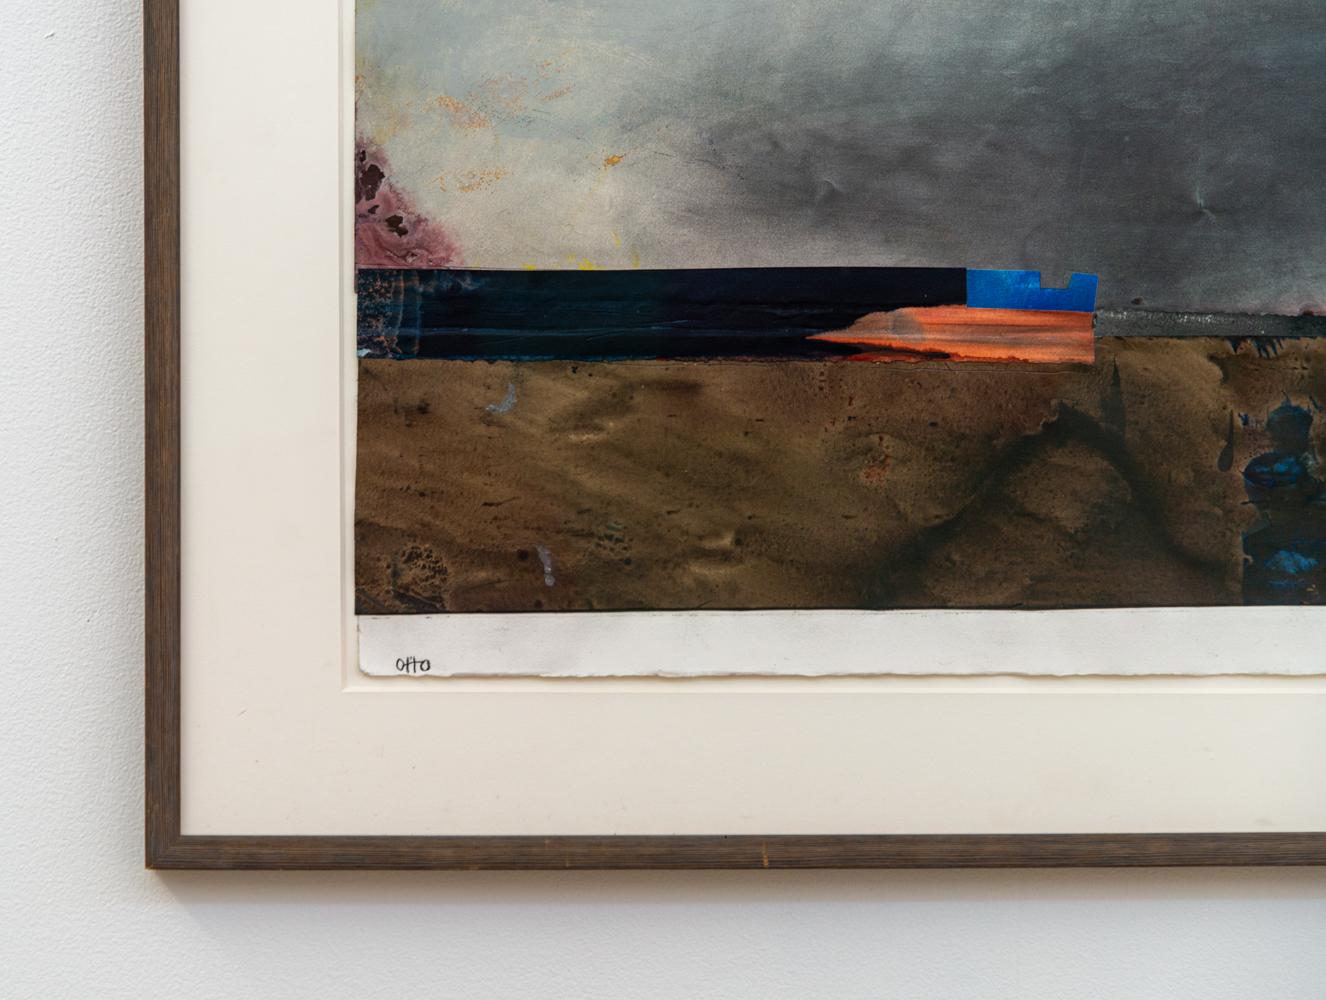 Lampe de bord de mer - audacieuse, terreuse, moderniste, abstraite, acrylique et graphite sur papier - Abstrait Painting par Otto Rogers